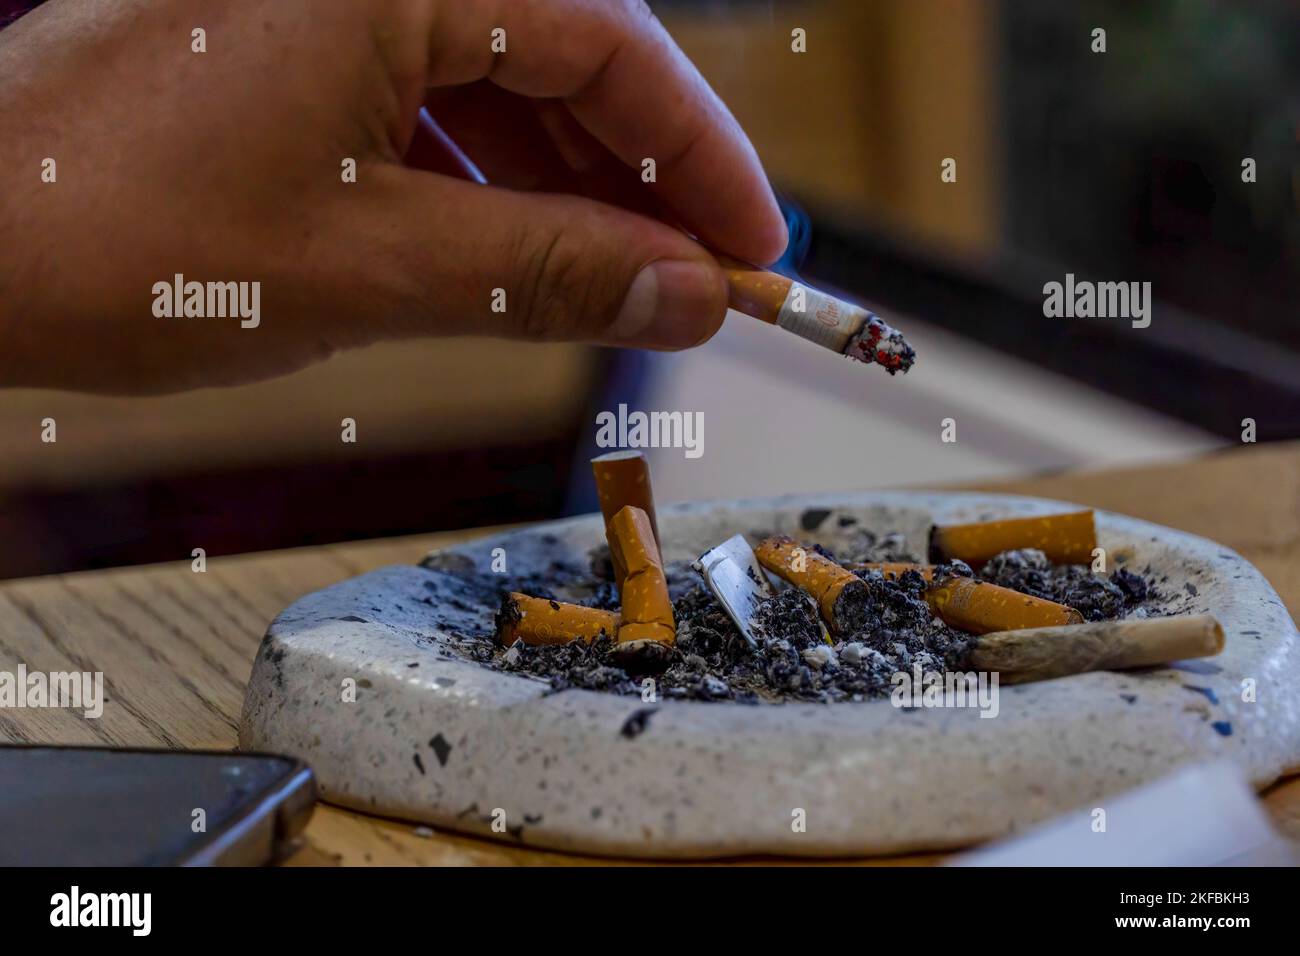 Rauch. Weißer Aschenbecher Mit Zigarettenbraun Auf Einem Schwarzen  Hintergrund. Stockbild - Bild von konzepte, krebs: 29095713